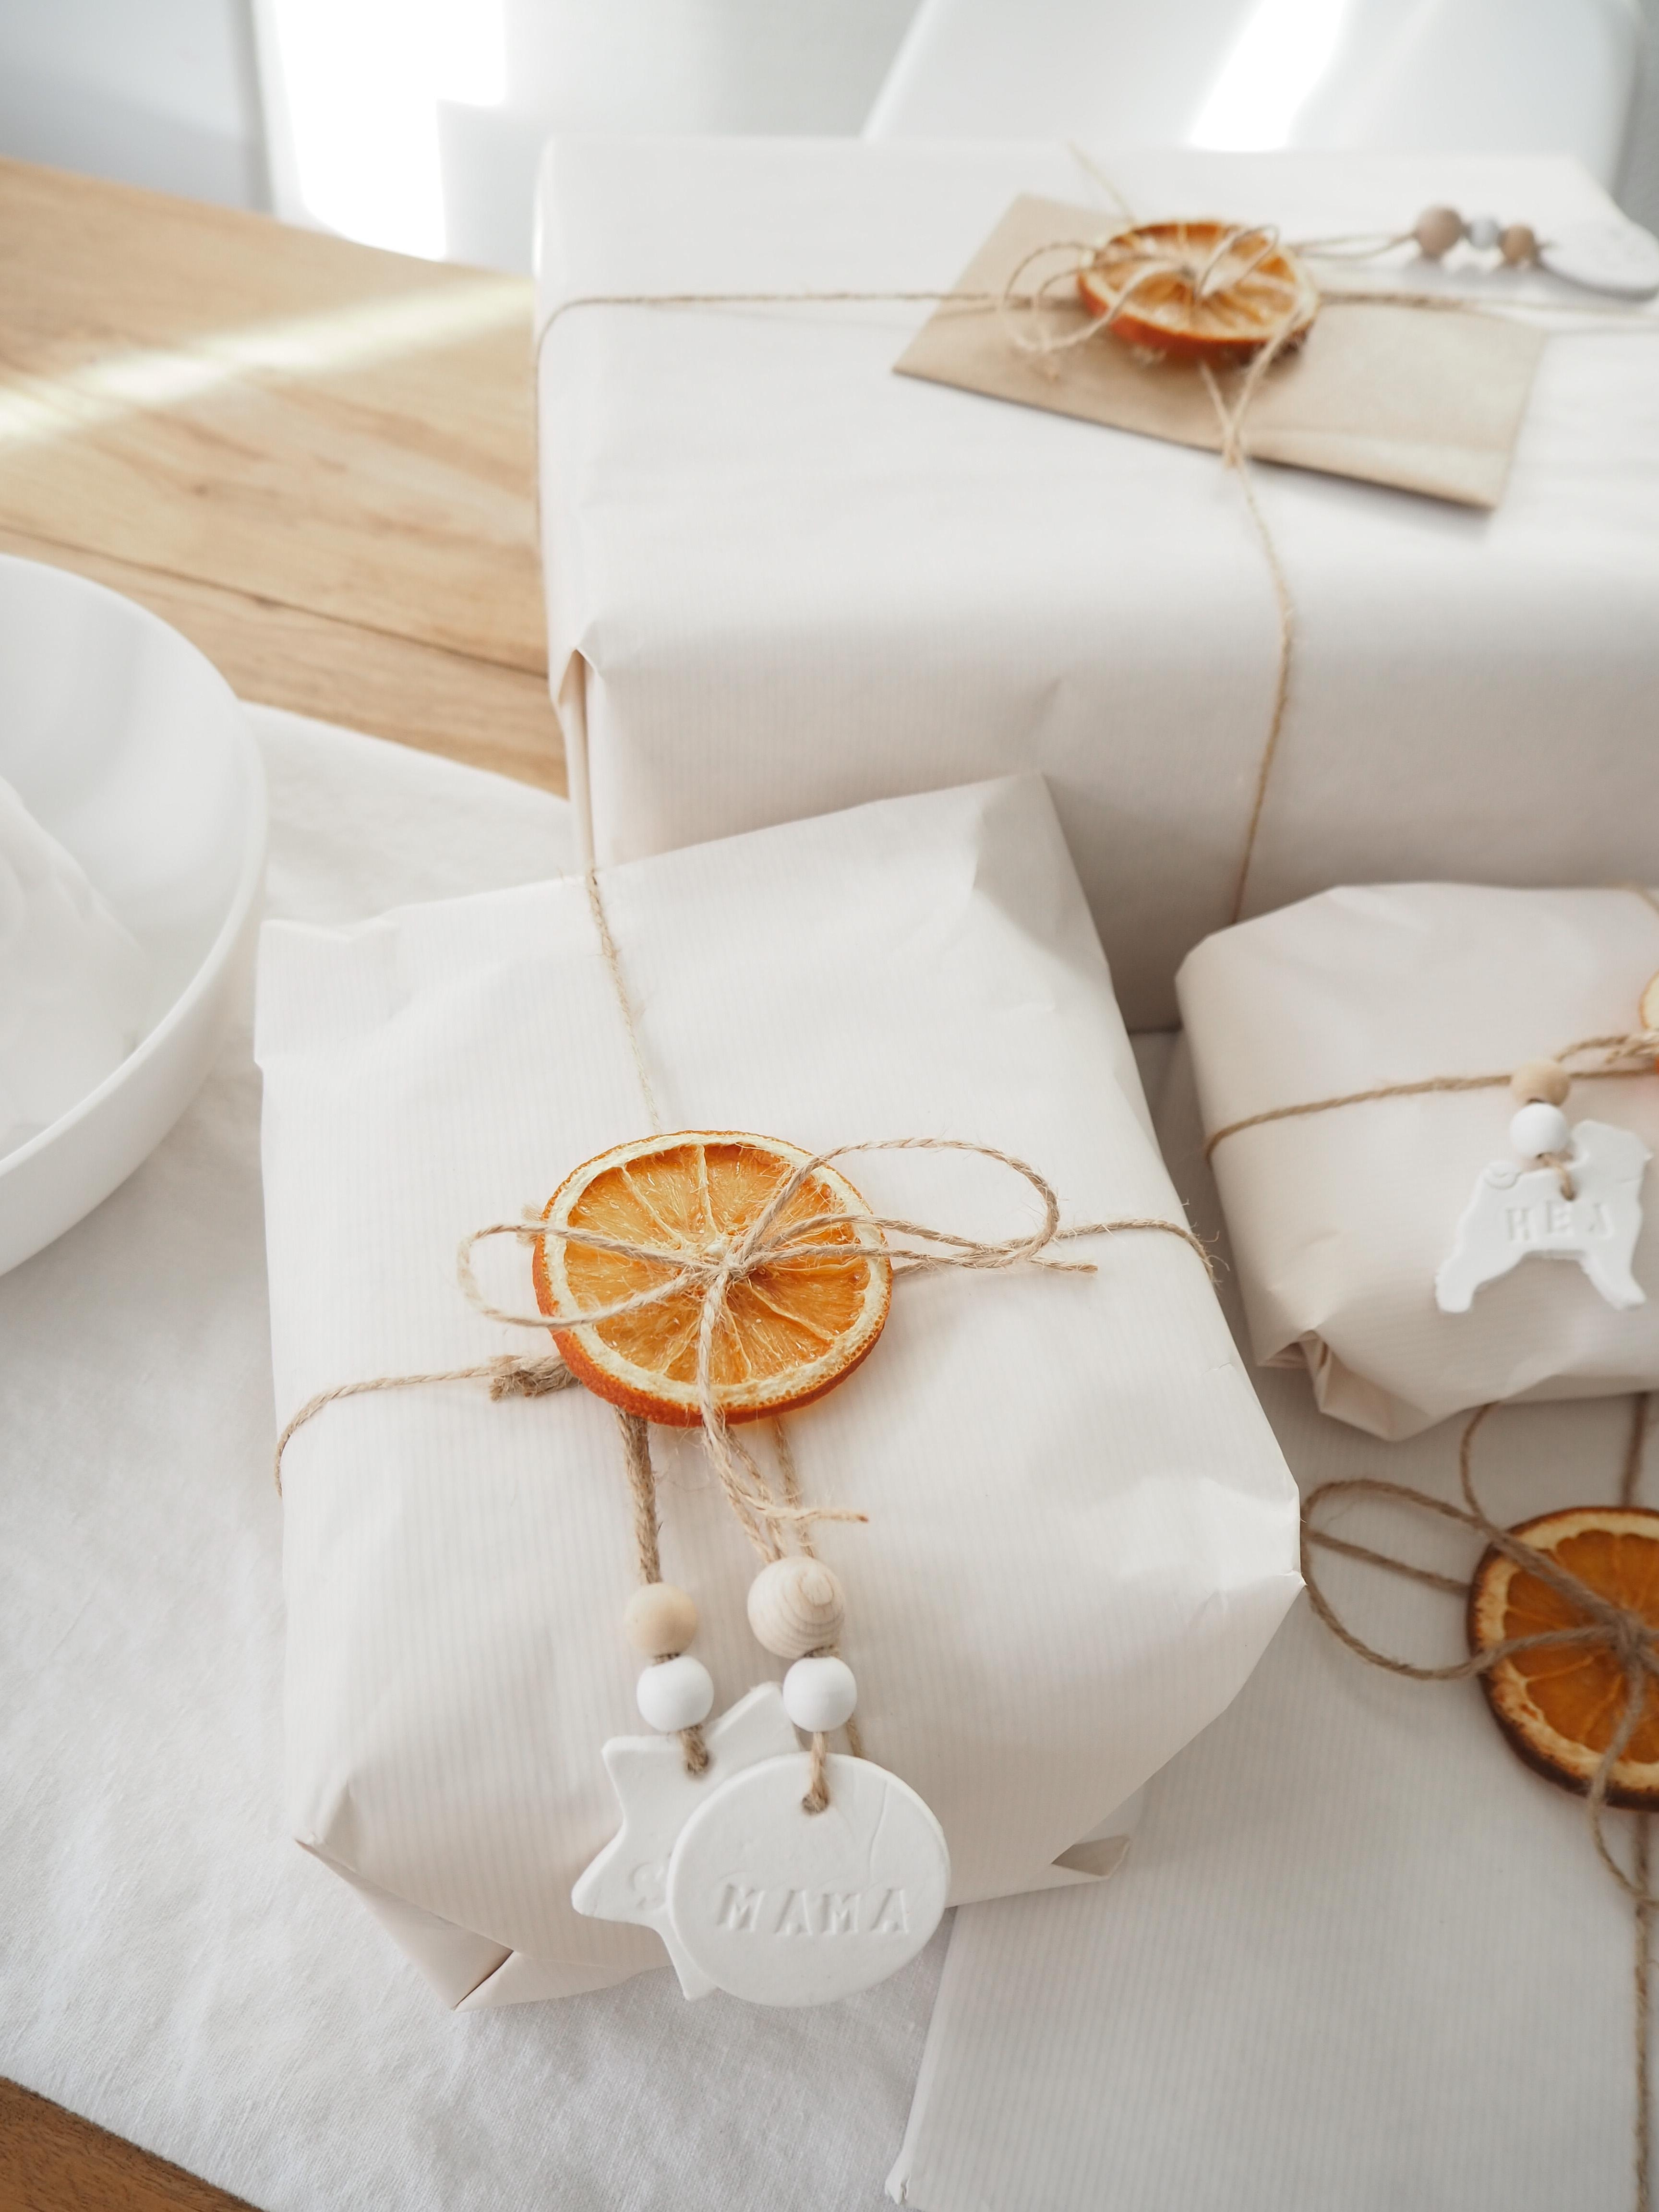 Diesjährige Geschenkverpackung 🍊 mit DIY Anhängern aus Modelliermasse #geschenkverpackung #geschenke #orangenscheiben